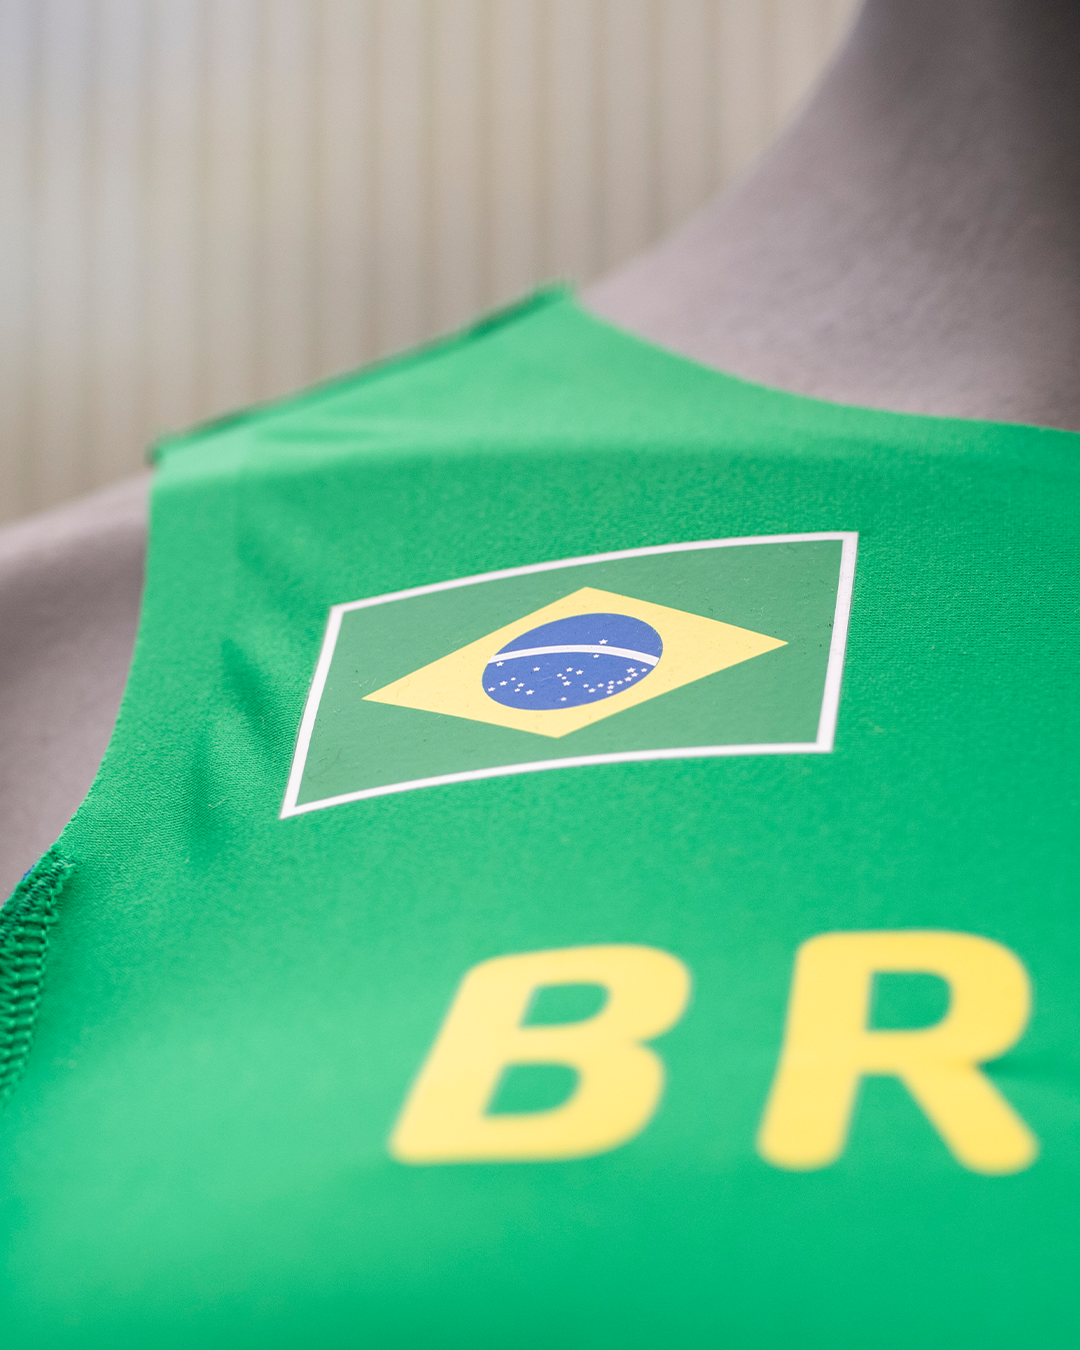 brasil 1